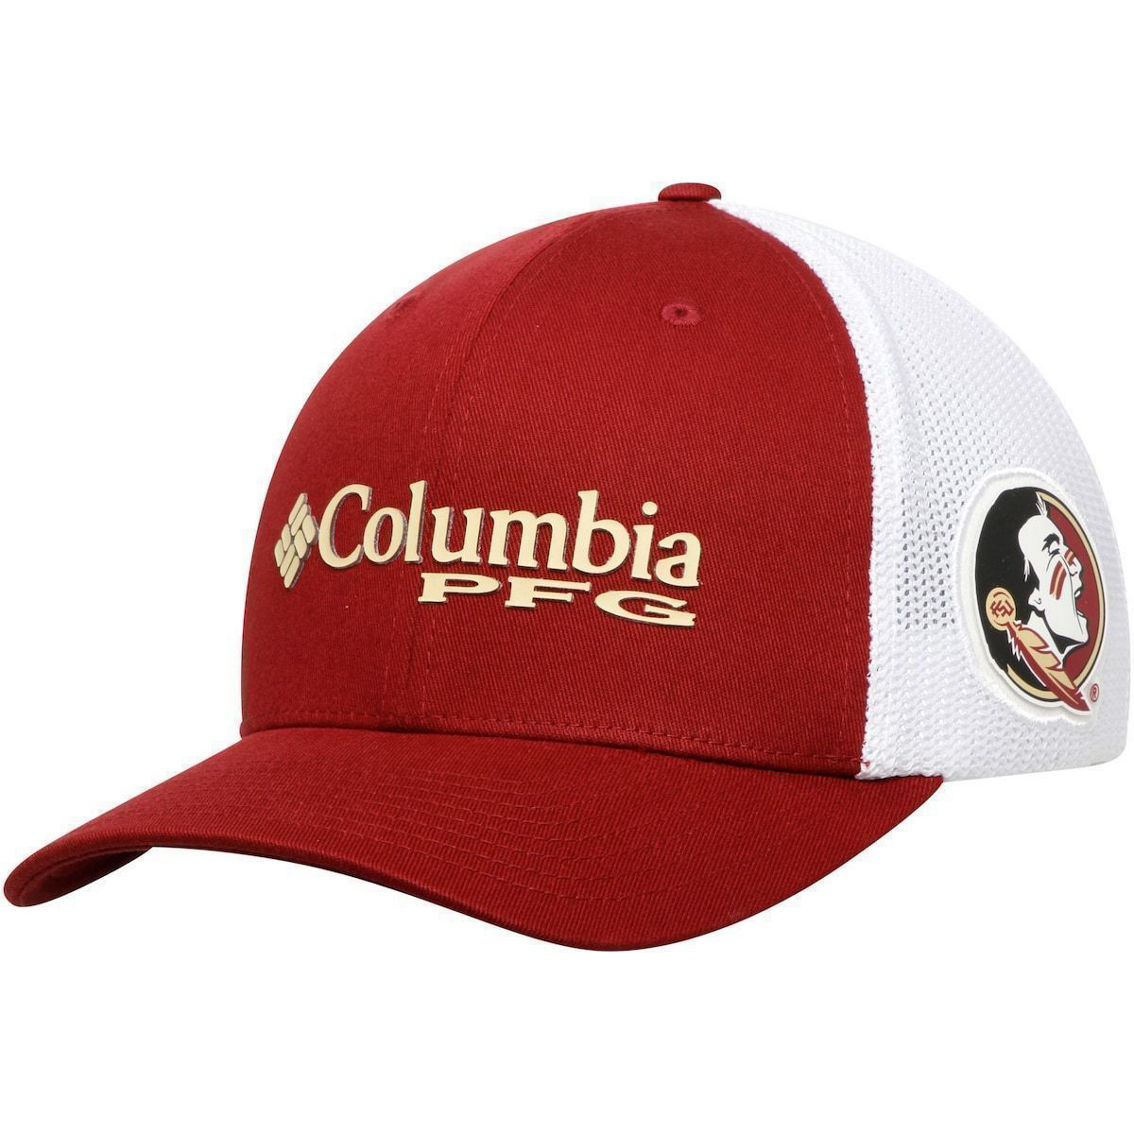 Men's Columbia Garnet Florida State Seminoles Collegiate PFG Flex Hat - Image 2 of 4